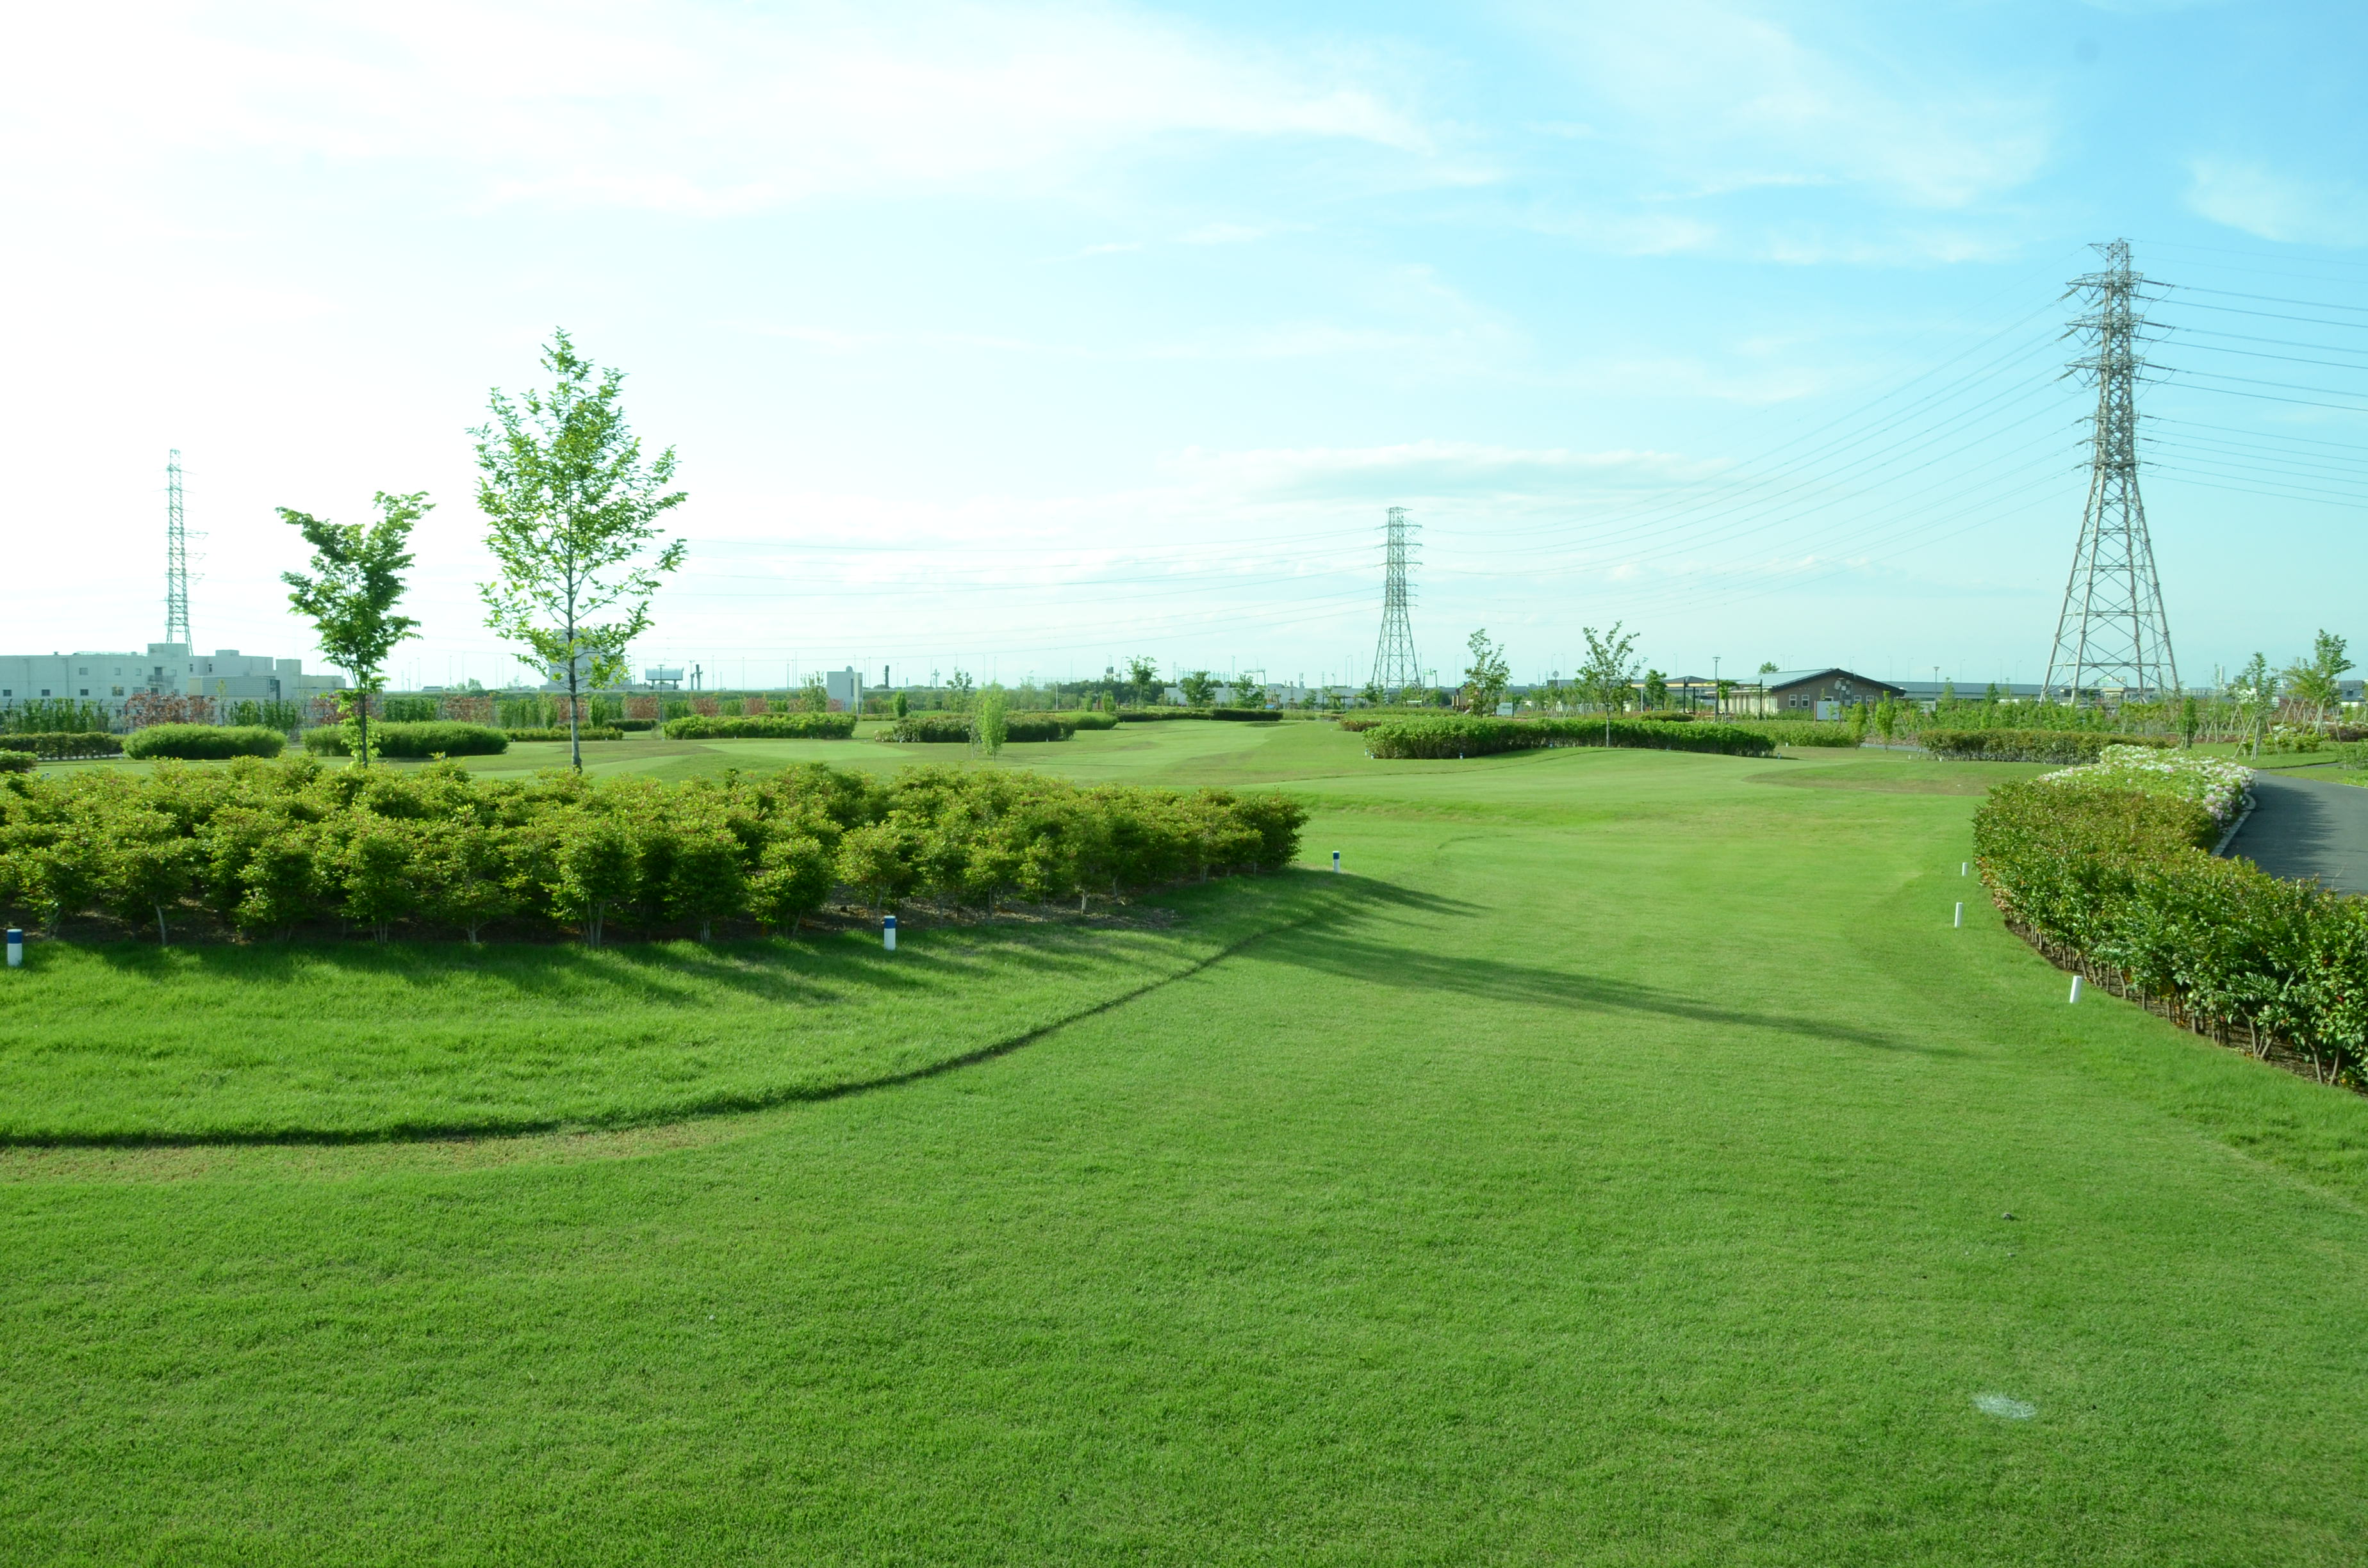 パークゴルフ場遠景の写真